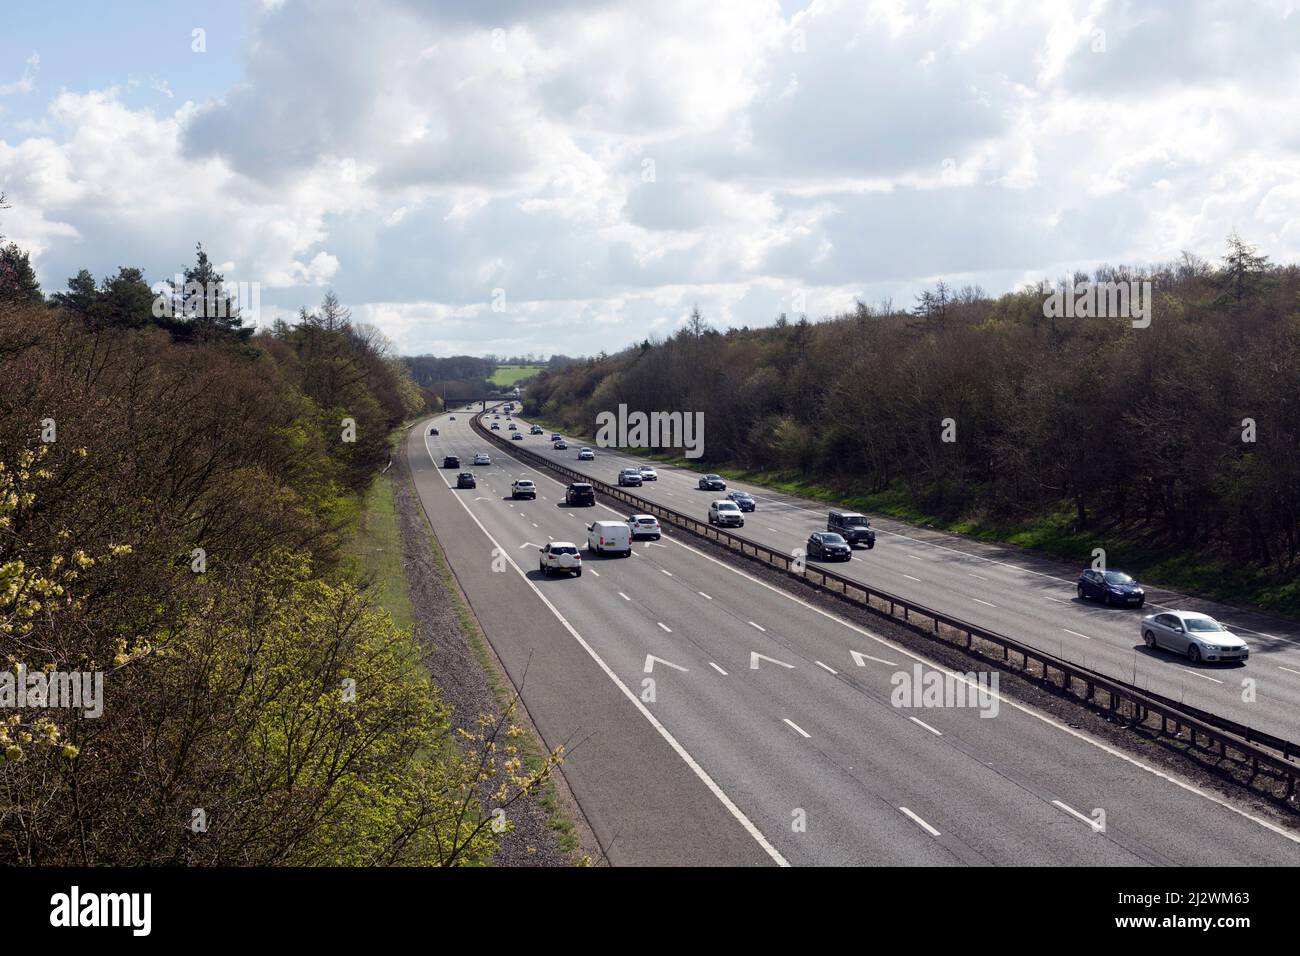 M6 motorway, Warwickshire, England, UK Stock Photo